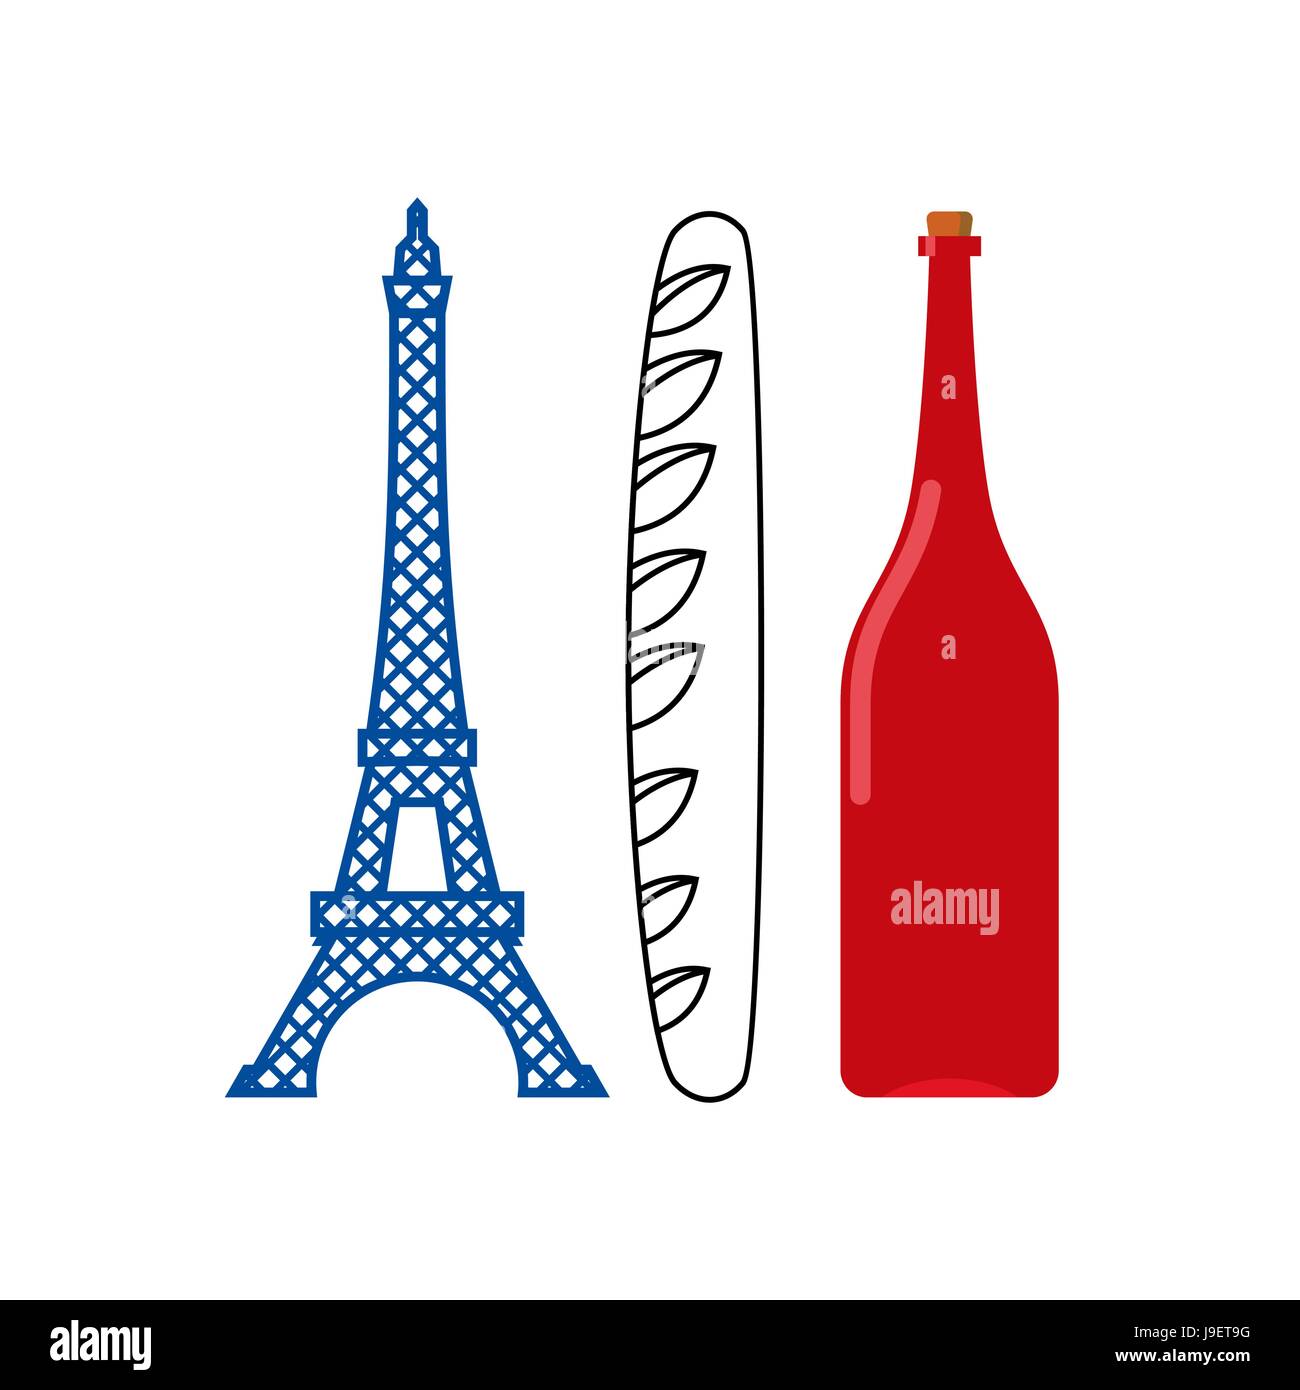 Frankreich Flagge der touristischen Attraktionen im Land: Eiffelturm, knackige Baguette und Flasche französischen Wein. Emblematischen französische Flagge Land. Stock Vektor